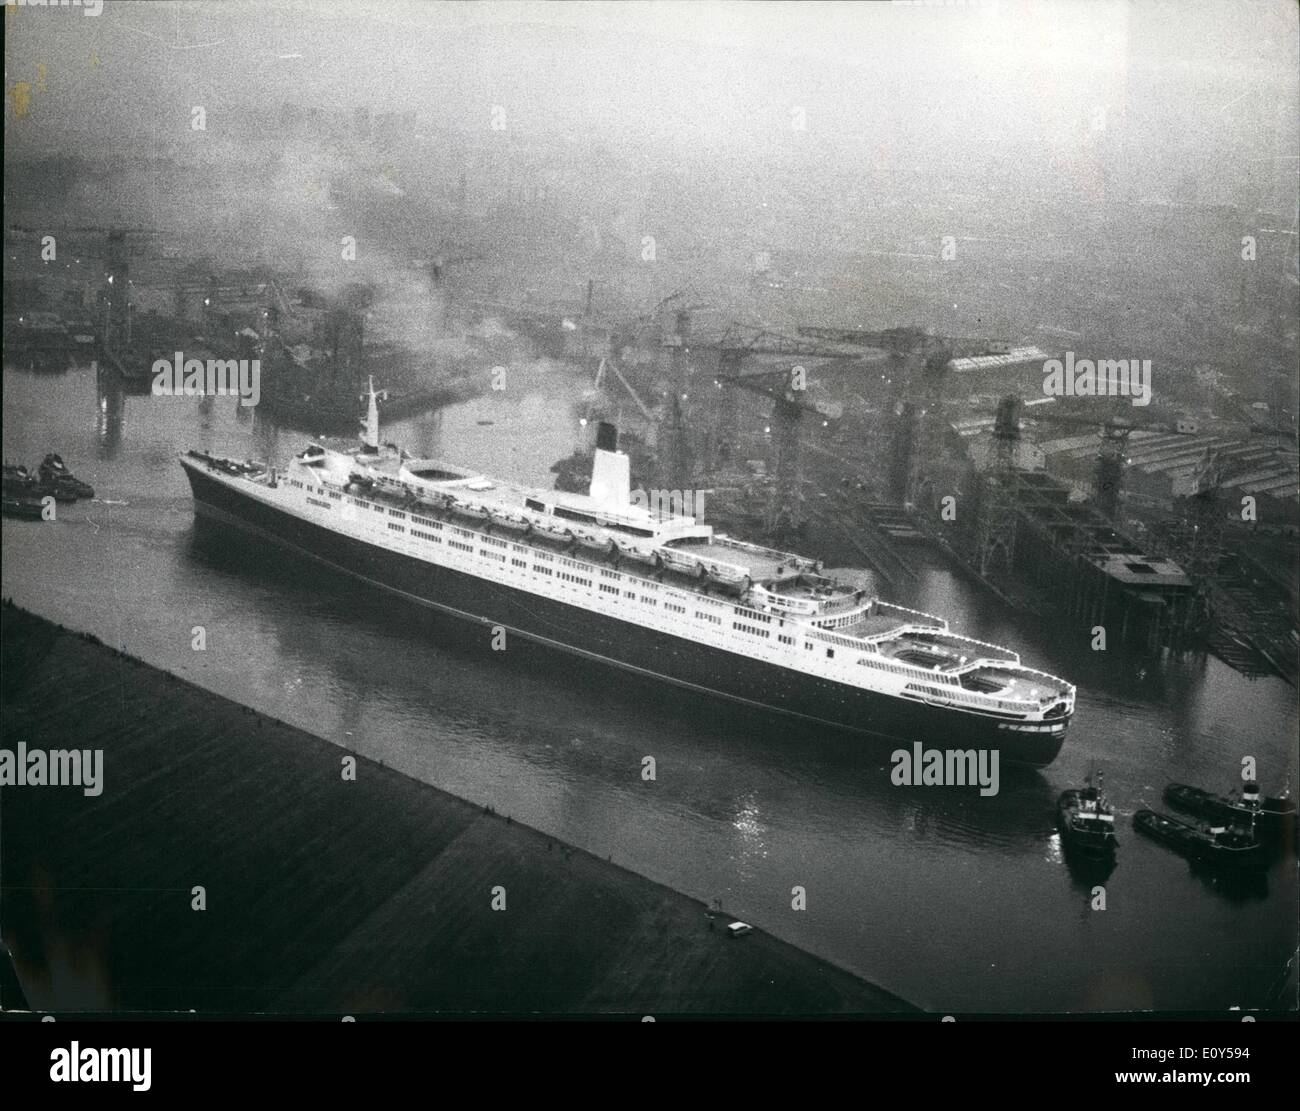 11. November 1968 - macht Queen Elizabeth 2 die erste Reise. Foto zeigt, dass der neue Liner Queen Elizabeth 2 gestern im Bild wenn sie machte ihre erste Reise unter eigener Kraft die 13 Meile Reise von der Armatur, Becken in Clydebank Dock in Greenock trocknen. Stockfoto